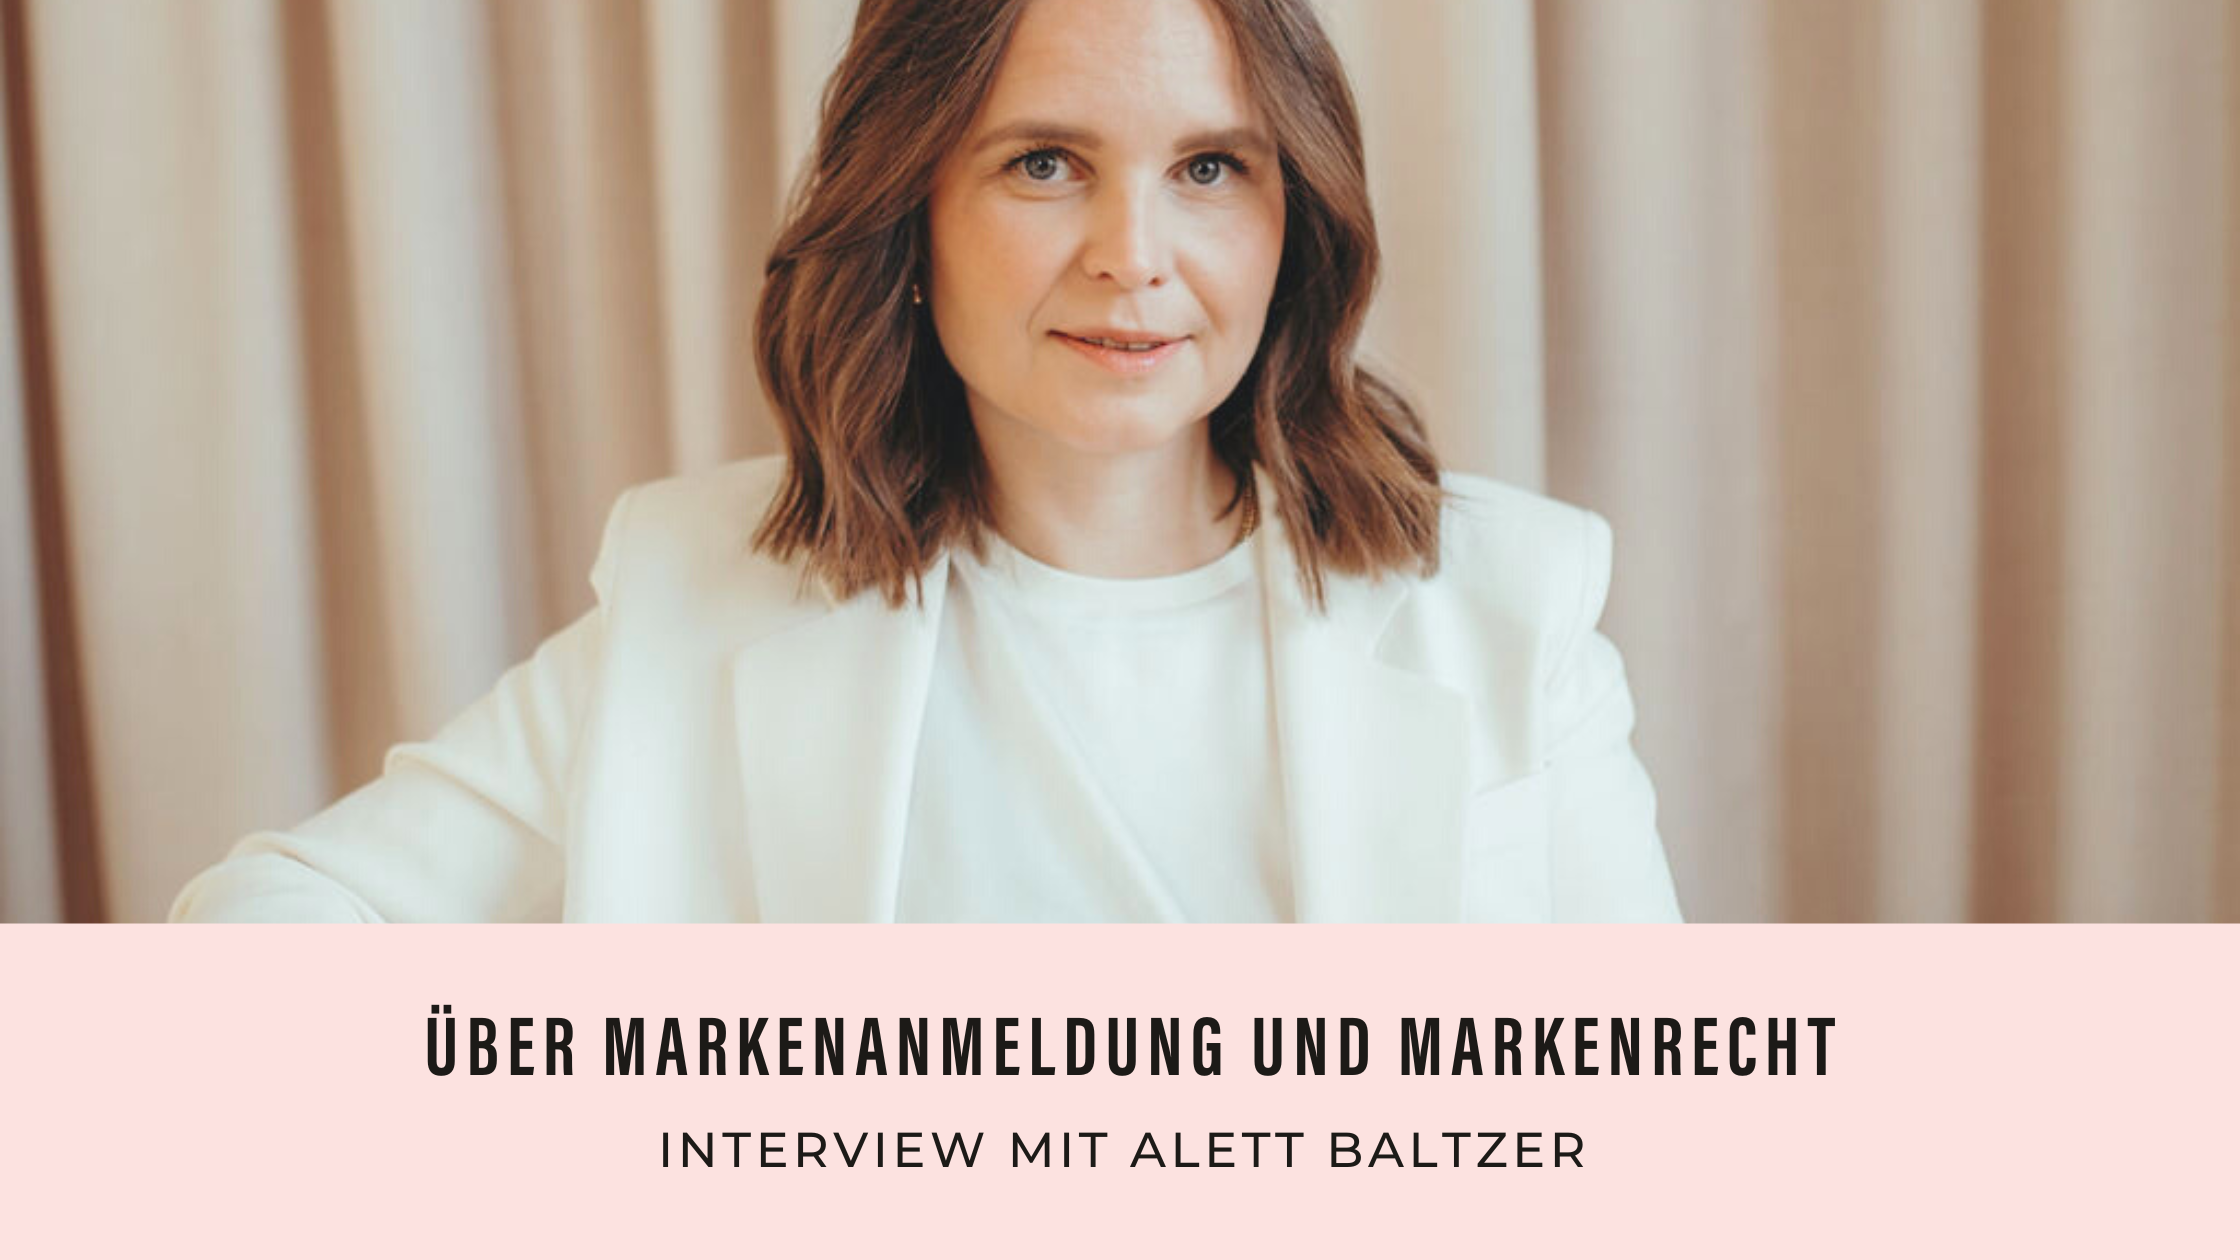 Zu sehen ist Alett Baltzer, Anwältin für Markenrecht